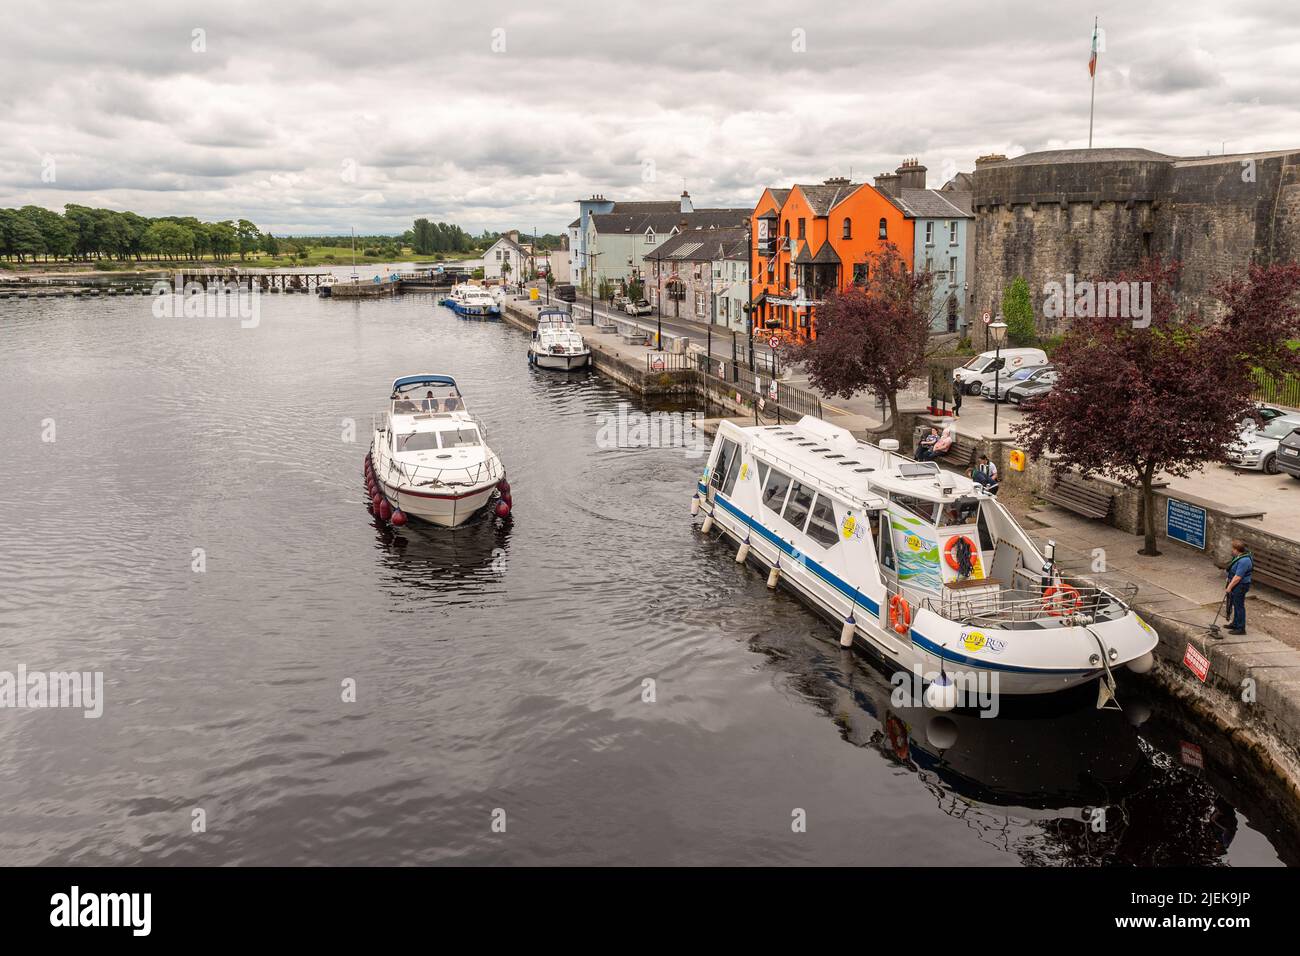 Les croiseurs motorisés sur la rivière Shannon lors d'une journée de passage à Athlone, Co. Westmeath, Irlande. Banque D'Images